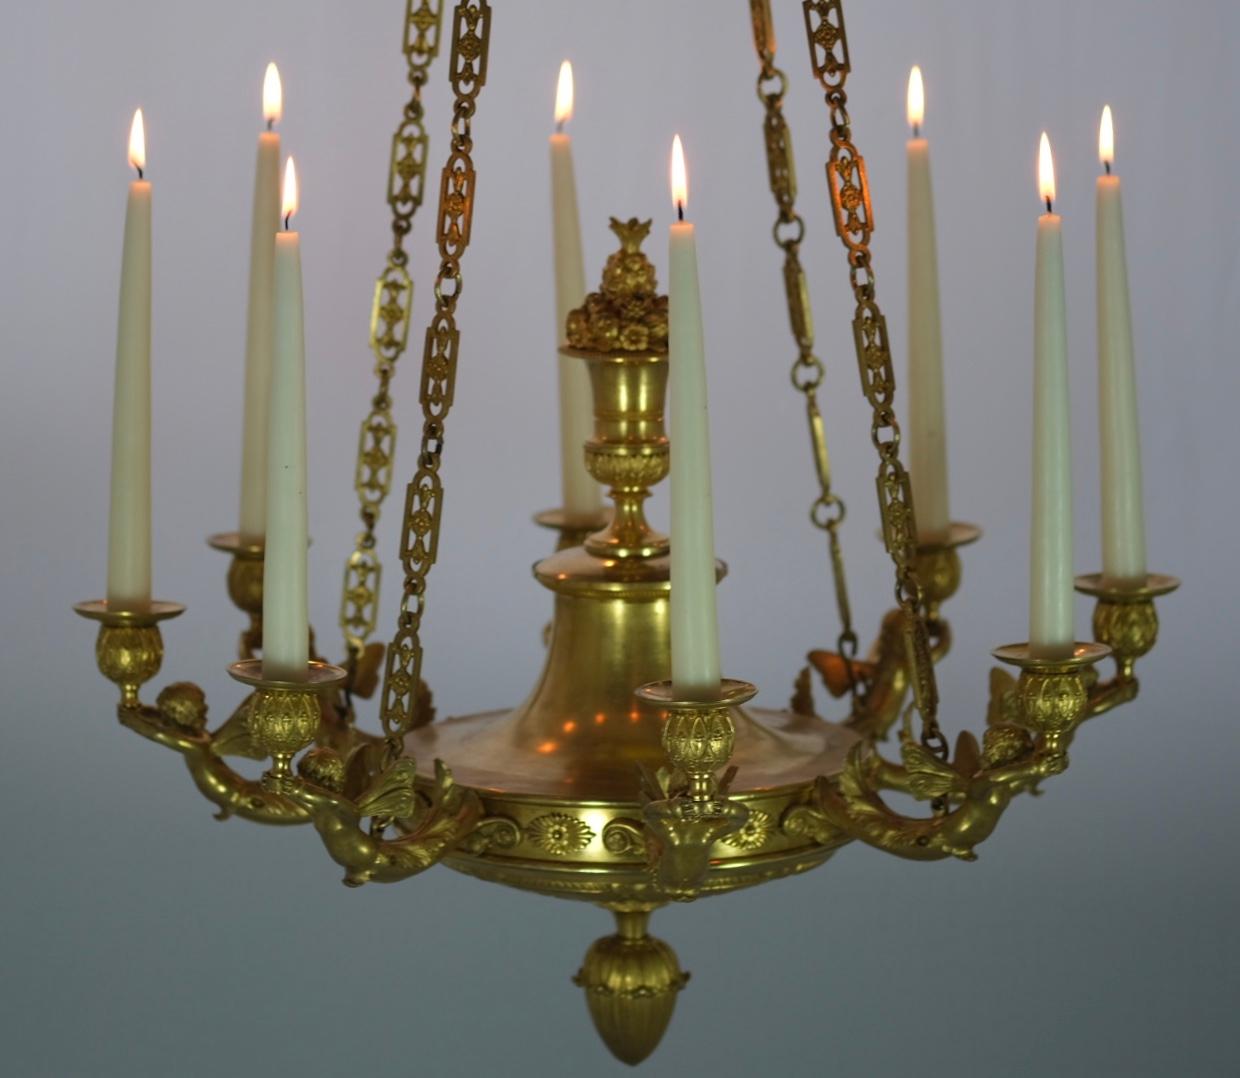 Kronleuchter aus vergoldeter Bronze mit acht Kerzenhaltern. Tolles Design mit geflügelten Putten, die die Urnen halten, in denen wiederum die Kerzen stehen. Gute Qualität und guter Zustand.